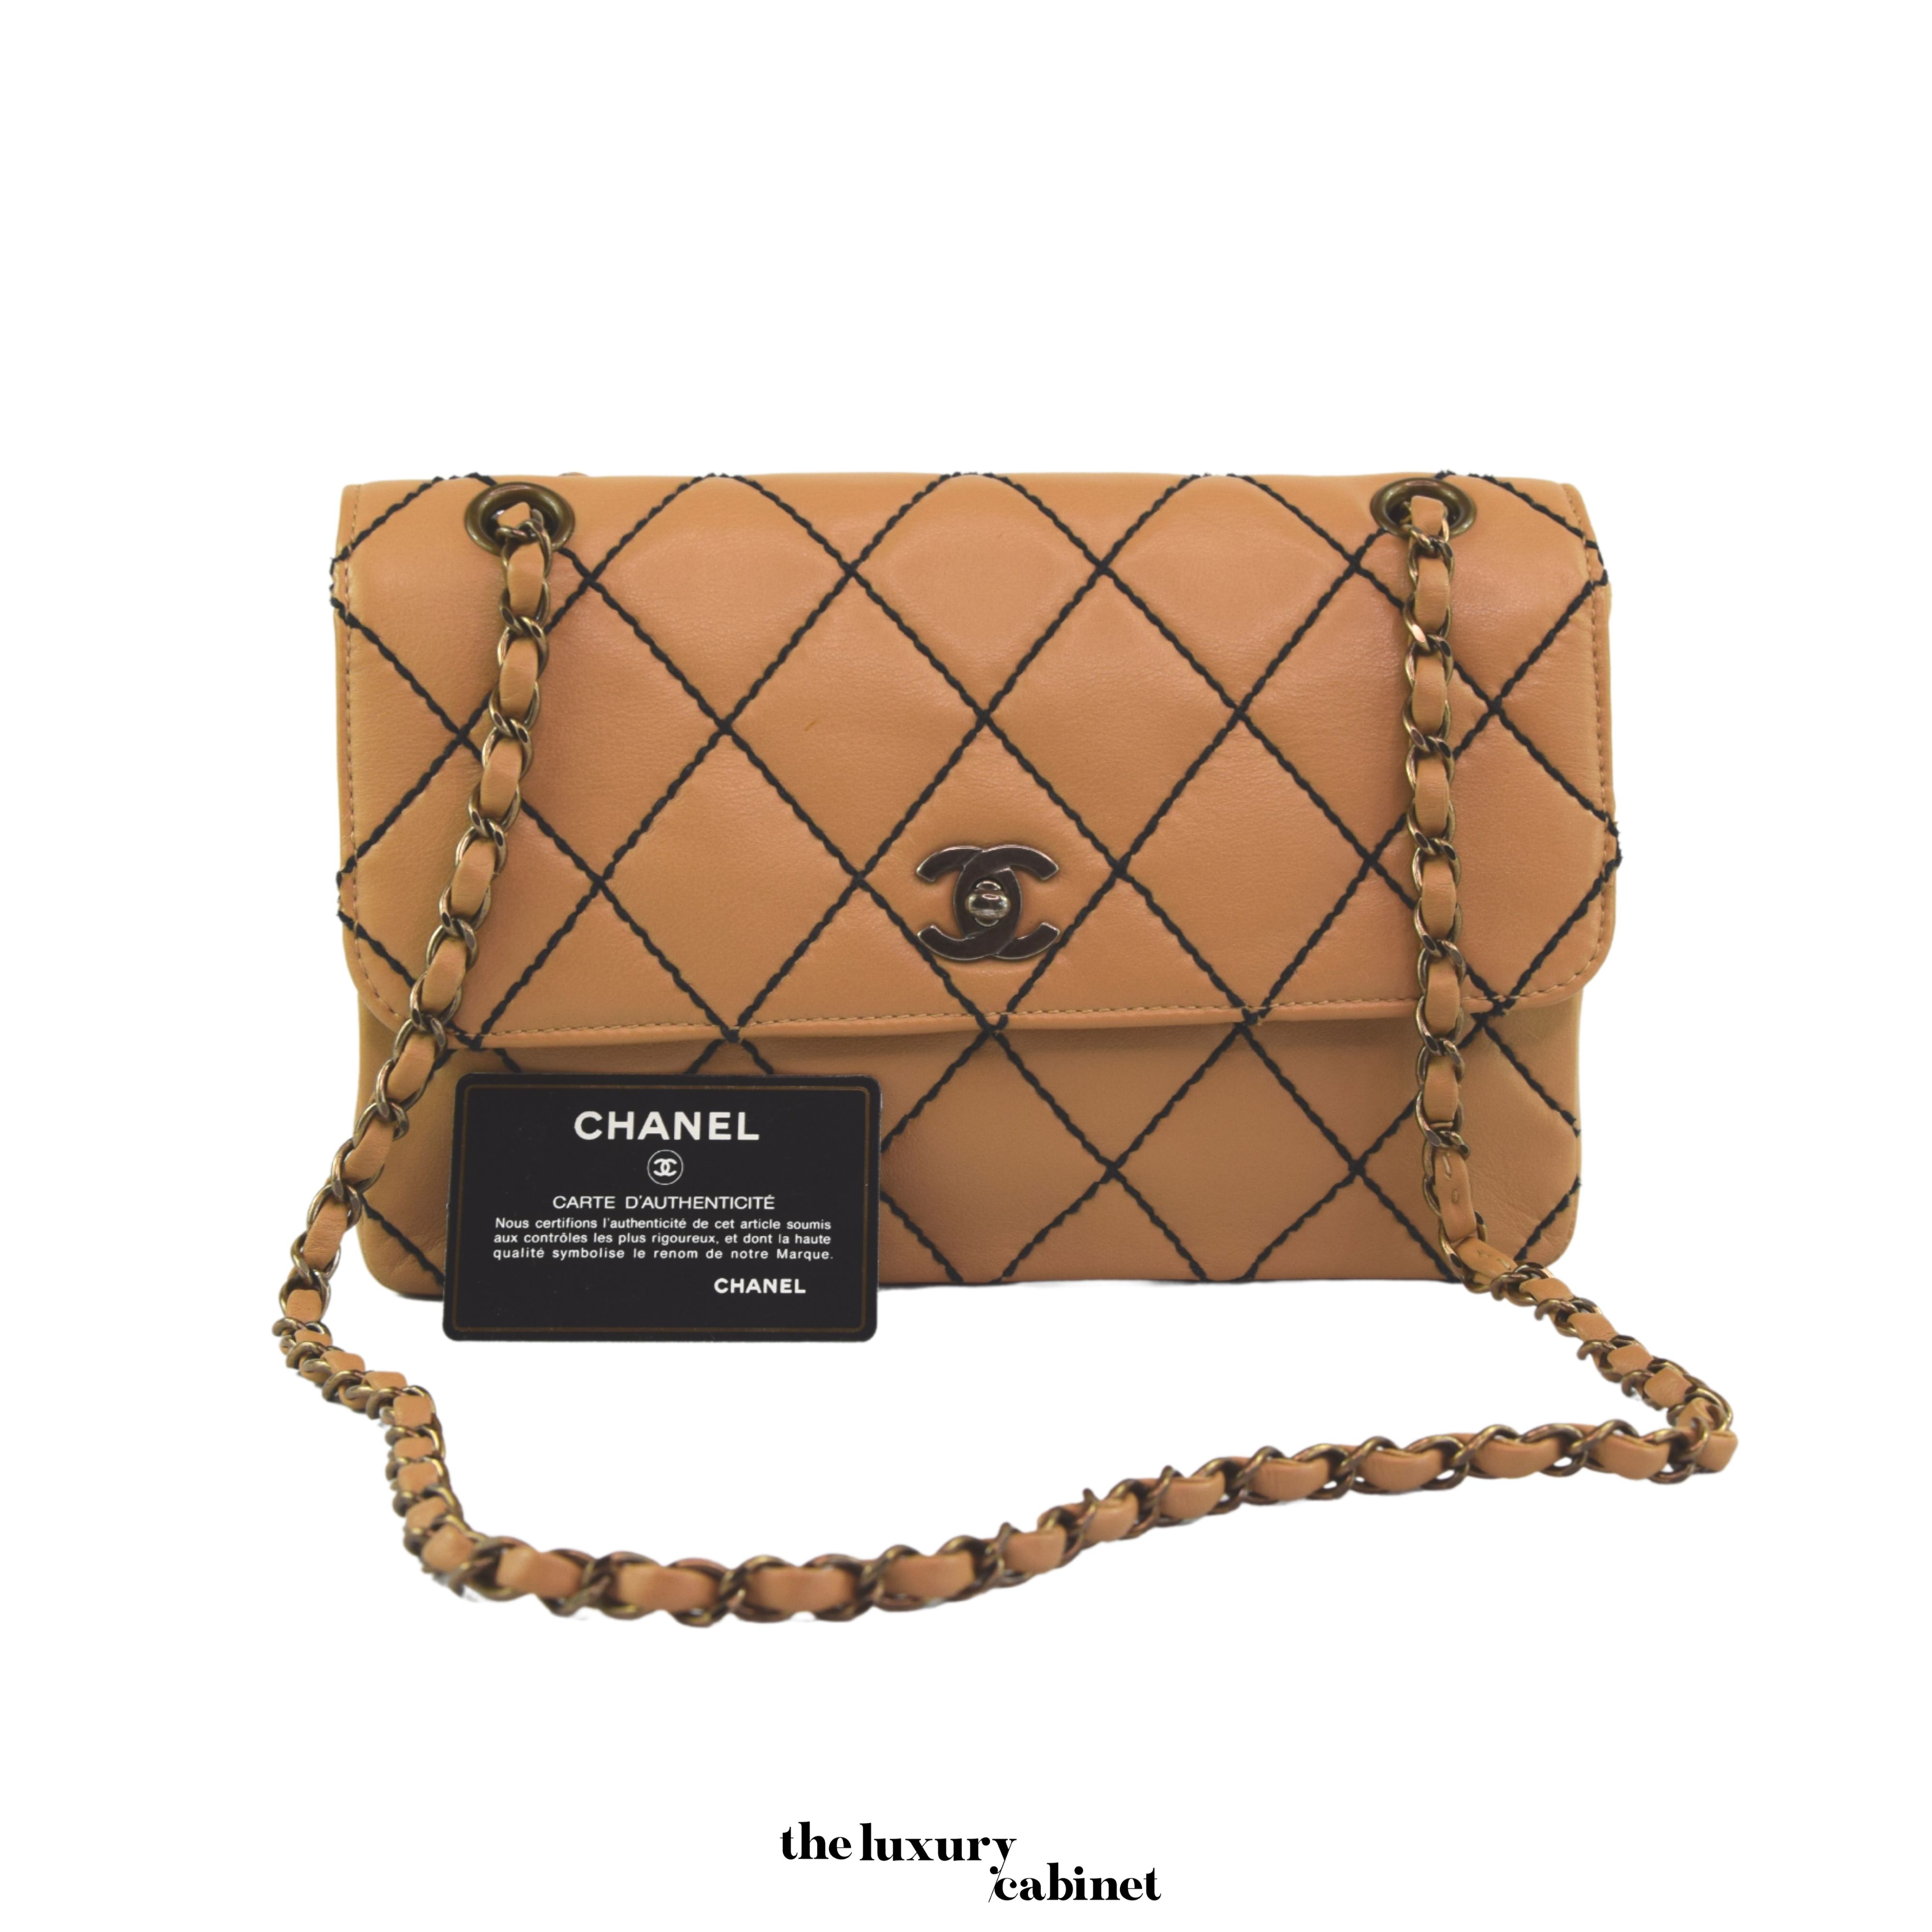 Chanel Wild Stitch Flap Bag Classic Surpique